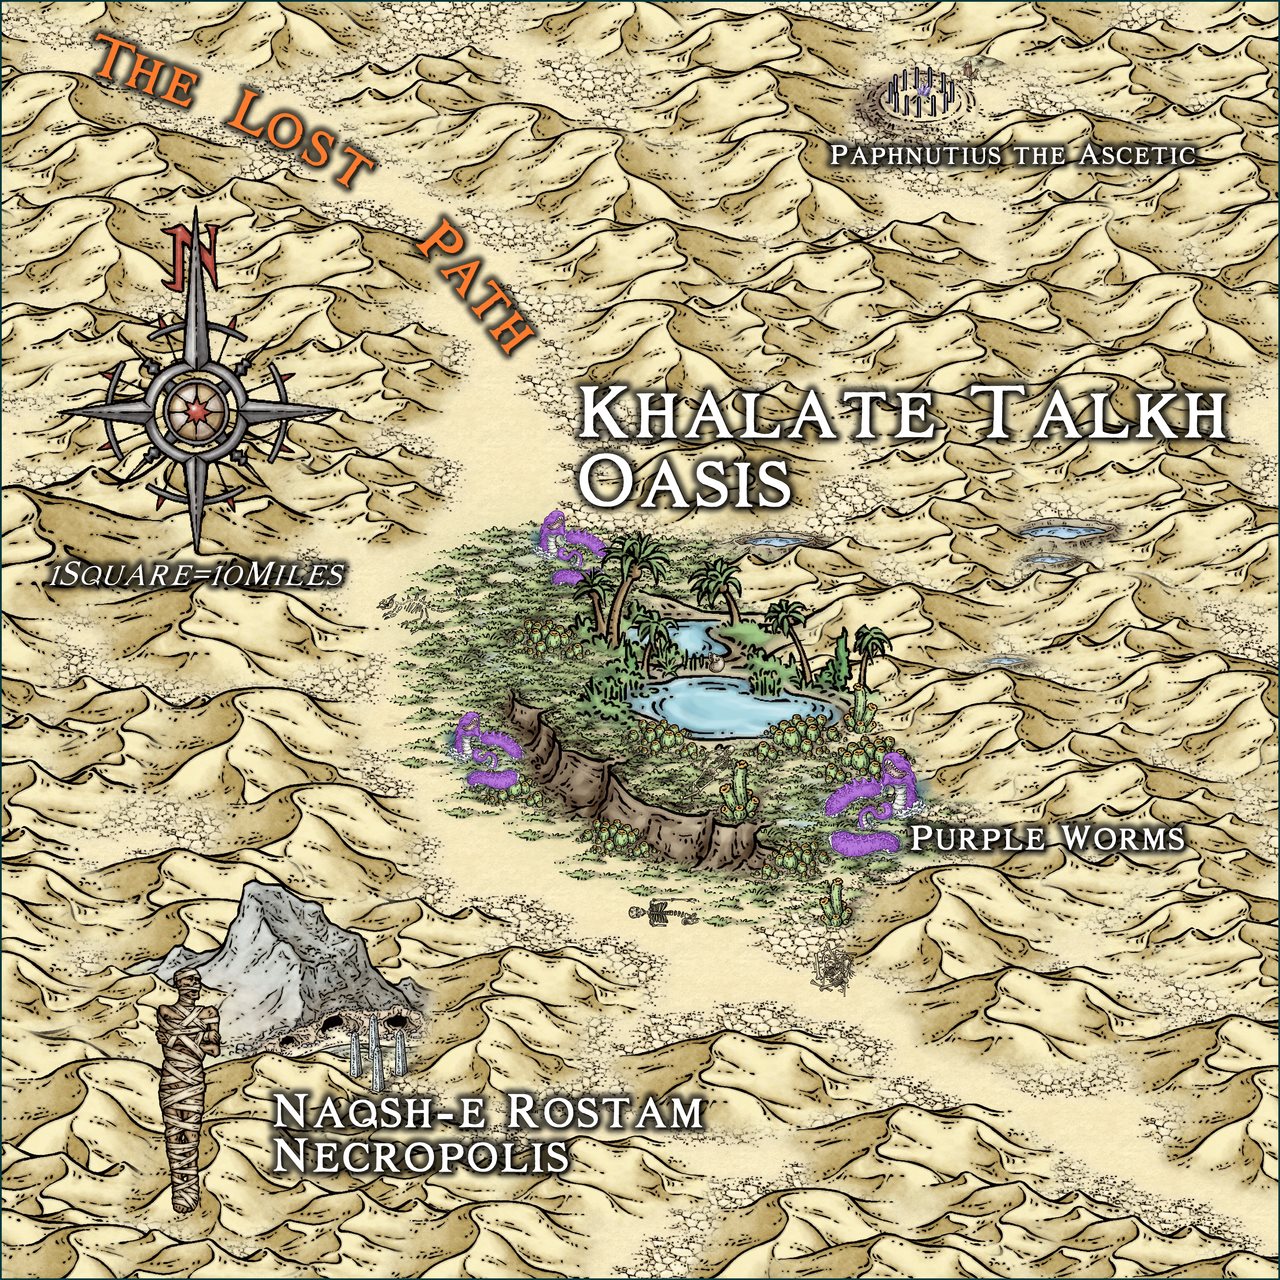 Nibirum Map: khalate talkh oasis by Ricko Hasche